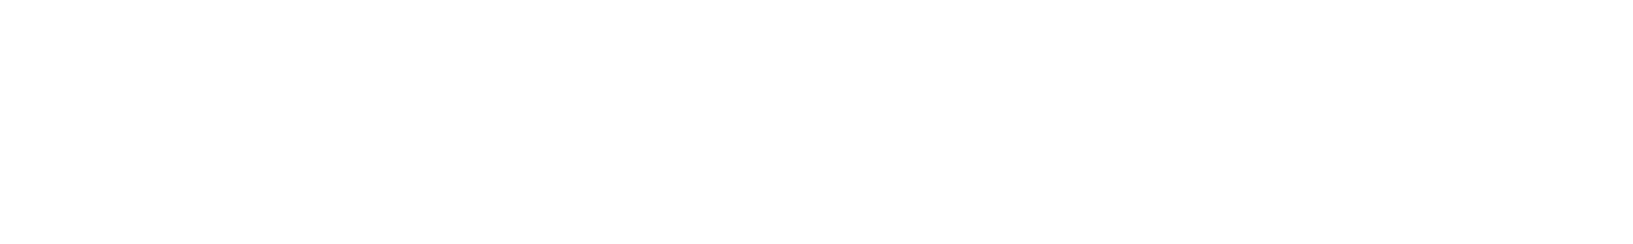 Cambium Networks logo grand pour les fonds sombres (PNG transparent)